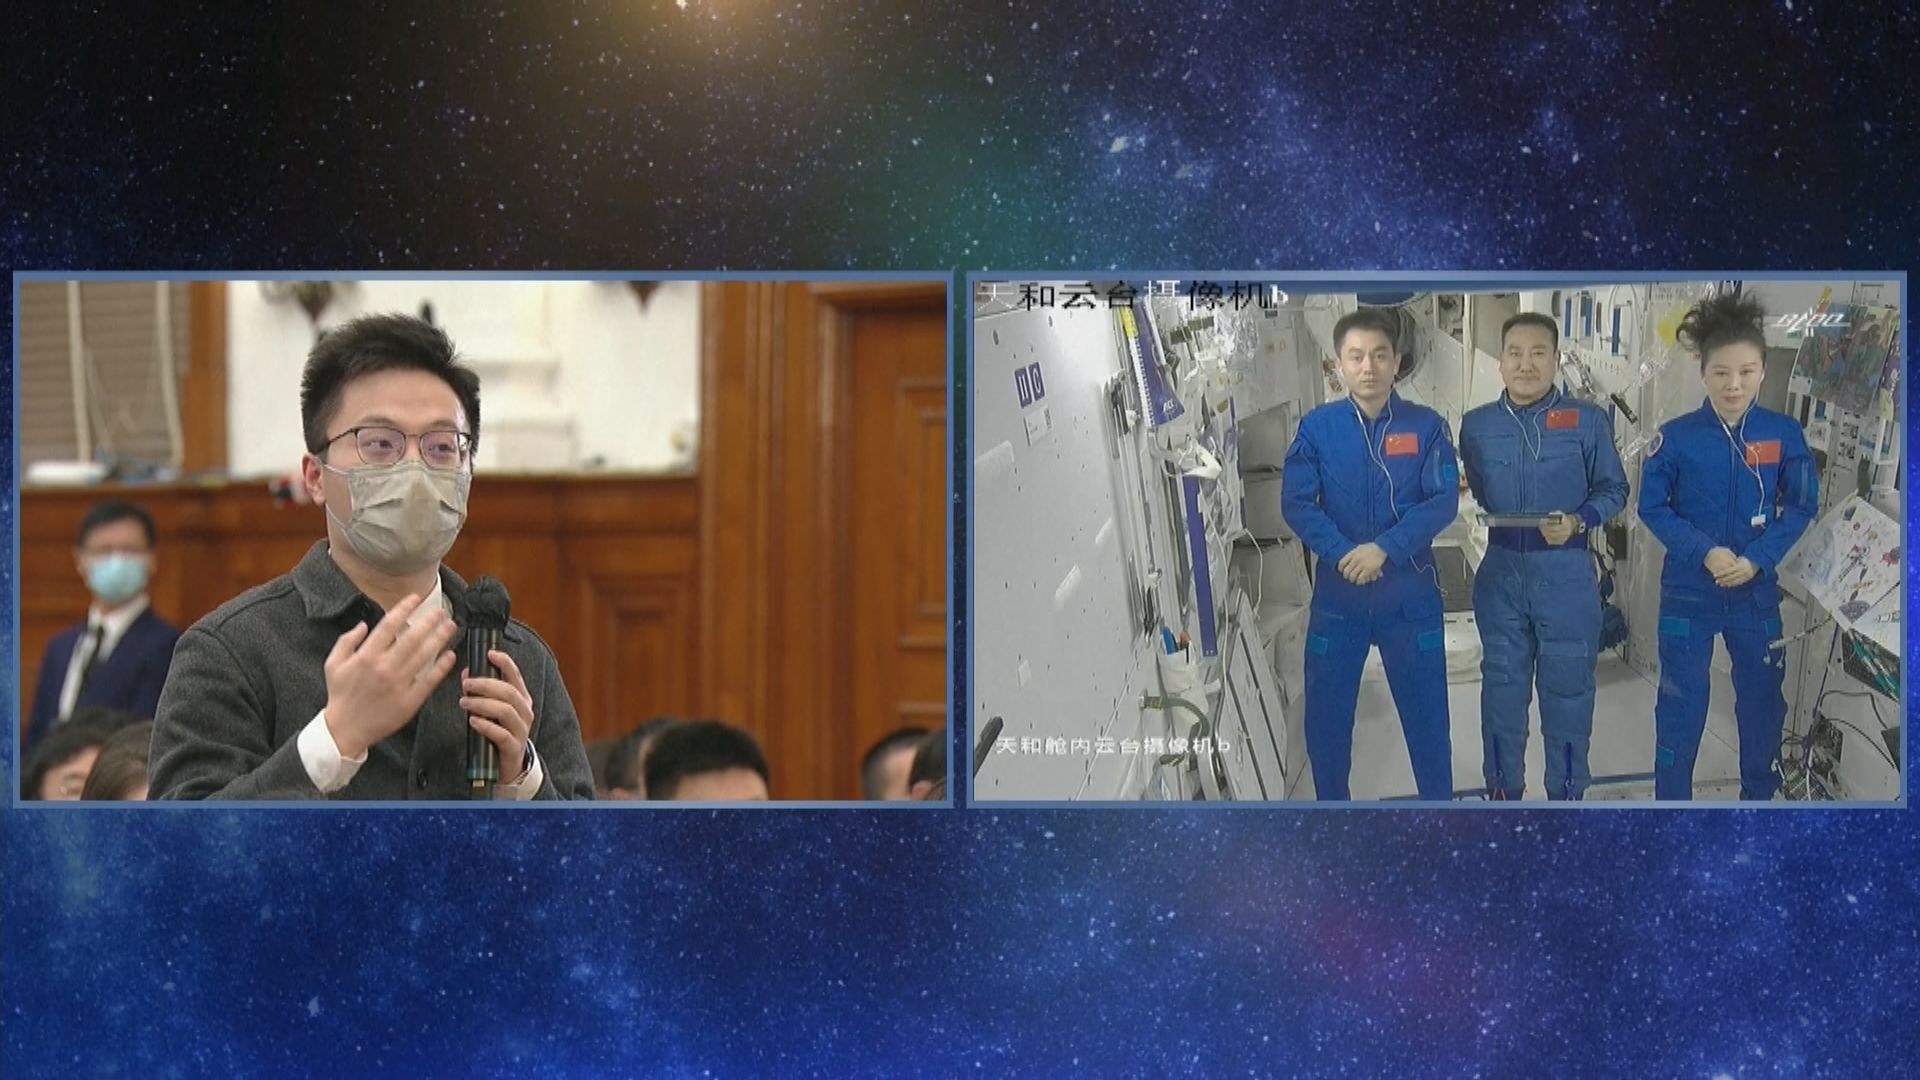 中國天宮太空站三名太空人與京港澳學生天地對話